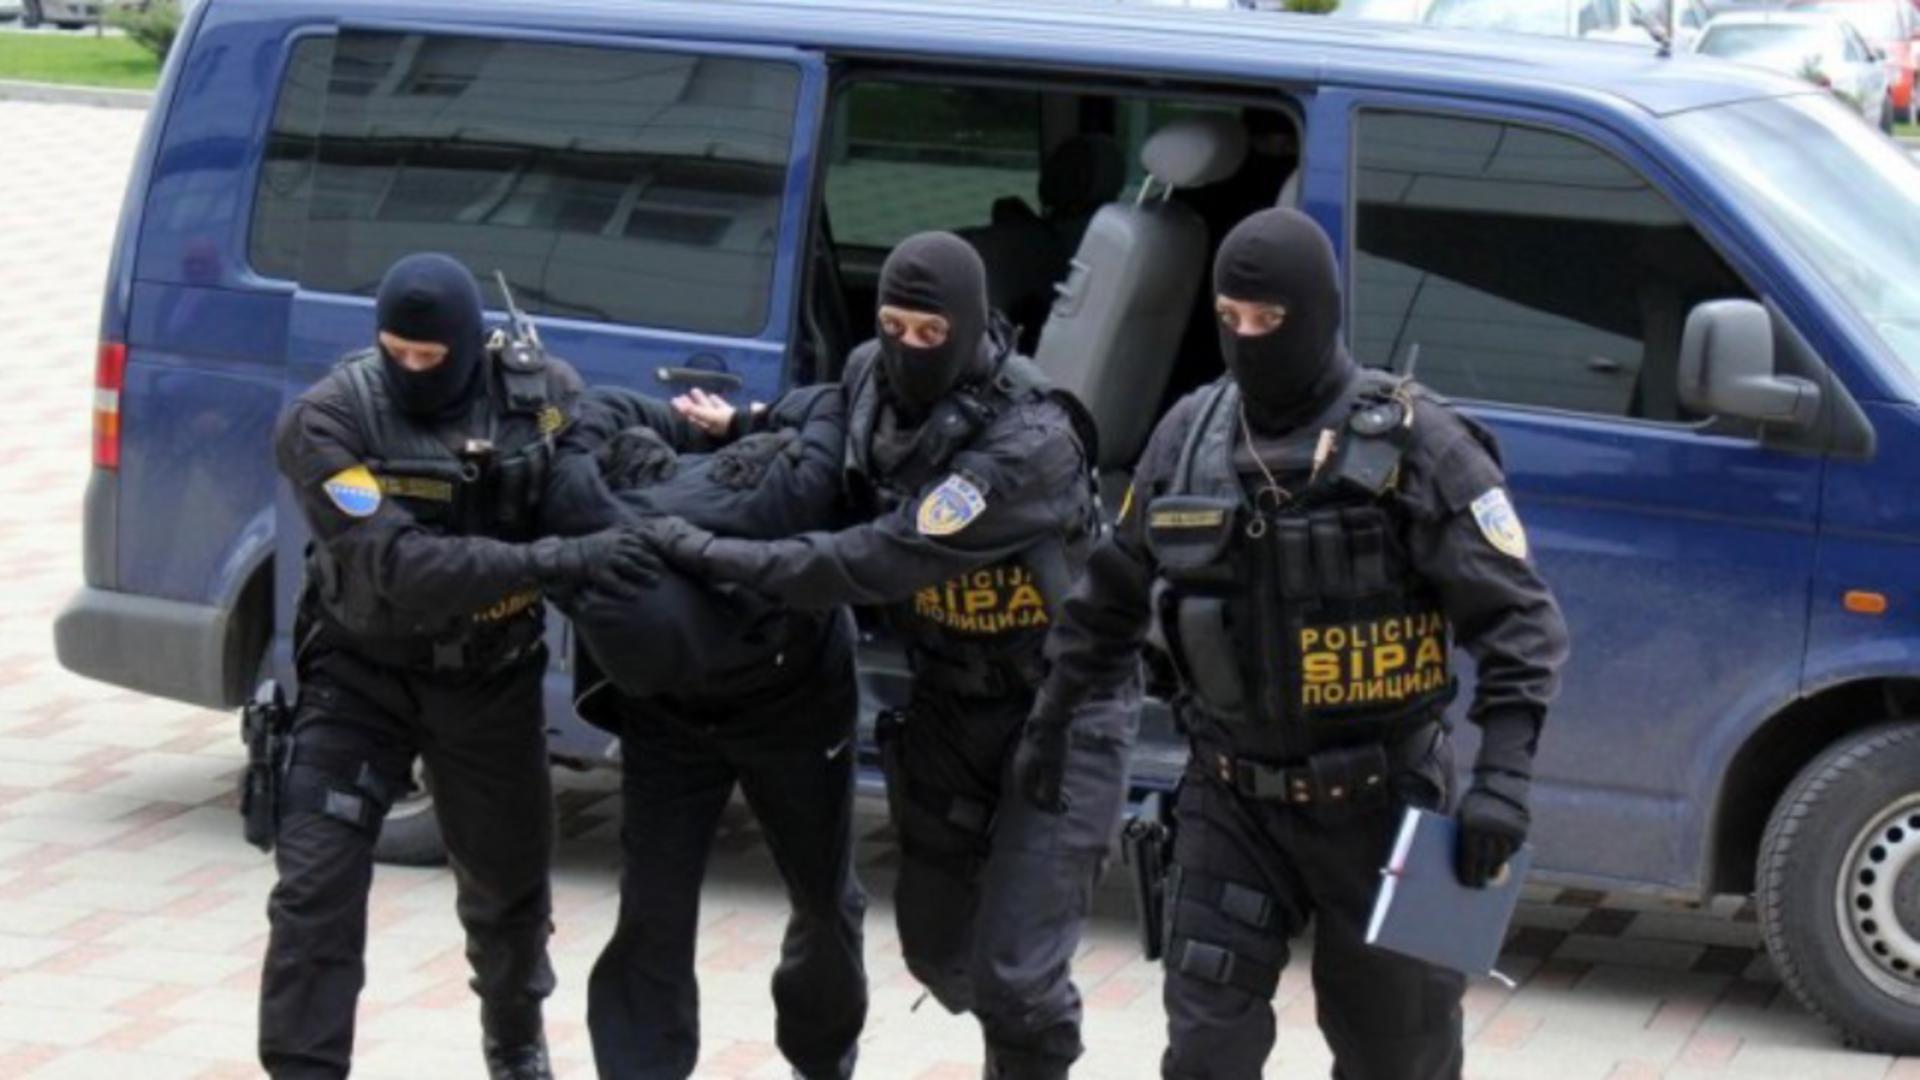 Politia Bosnia FOTO: Twitter